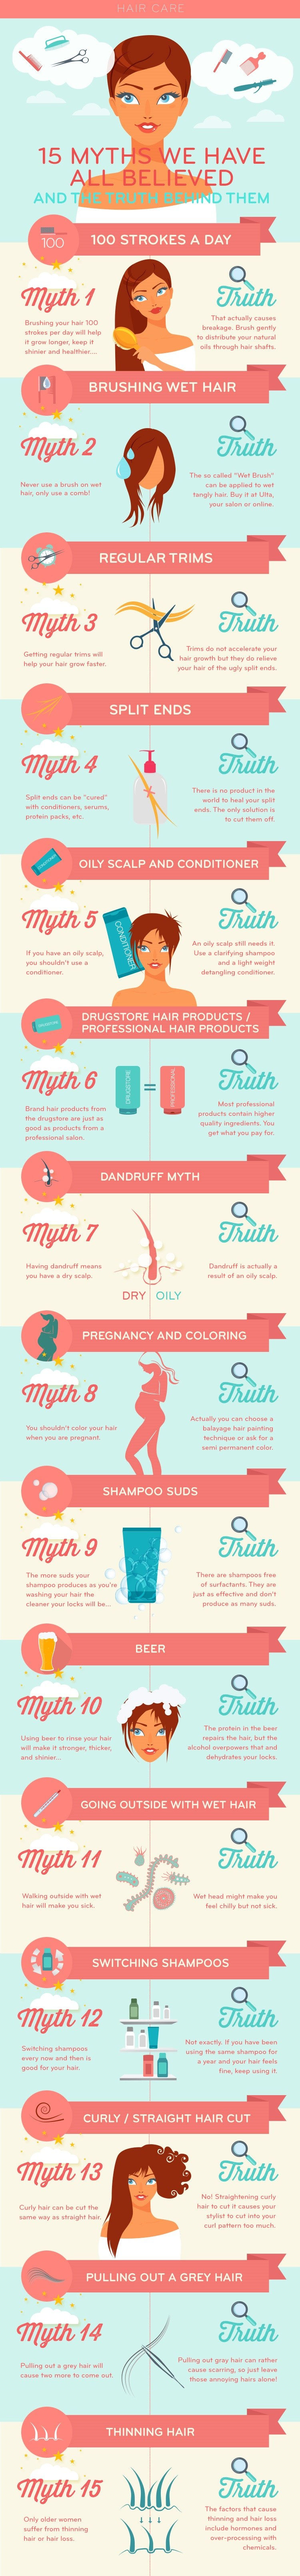 Haarpflege Mythen und Wahrheit